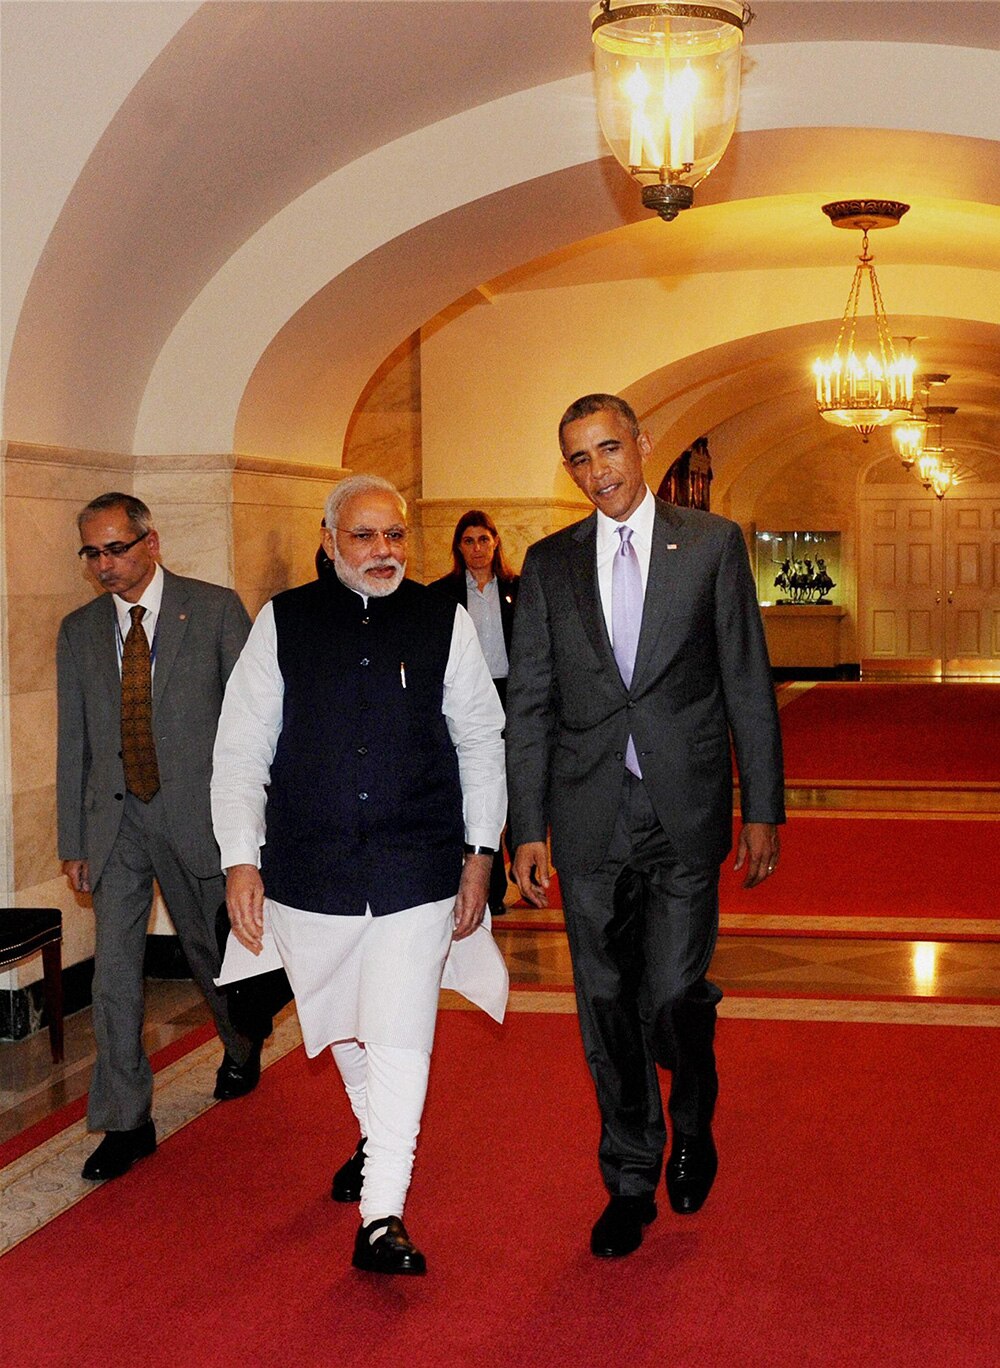 अमेरिका : व्‍हाइट हाऊस में आयोजित डिनर कार्यक्रम में प्रधानमंत्री नरेंद्र मोदी का स्‍वागत करते हुए अमेरिकी राष्‍ट्रपति बराक ओबामा। (फोटो सौजन्‍य: ट्वीटर)
